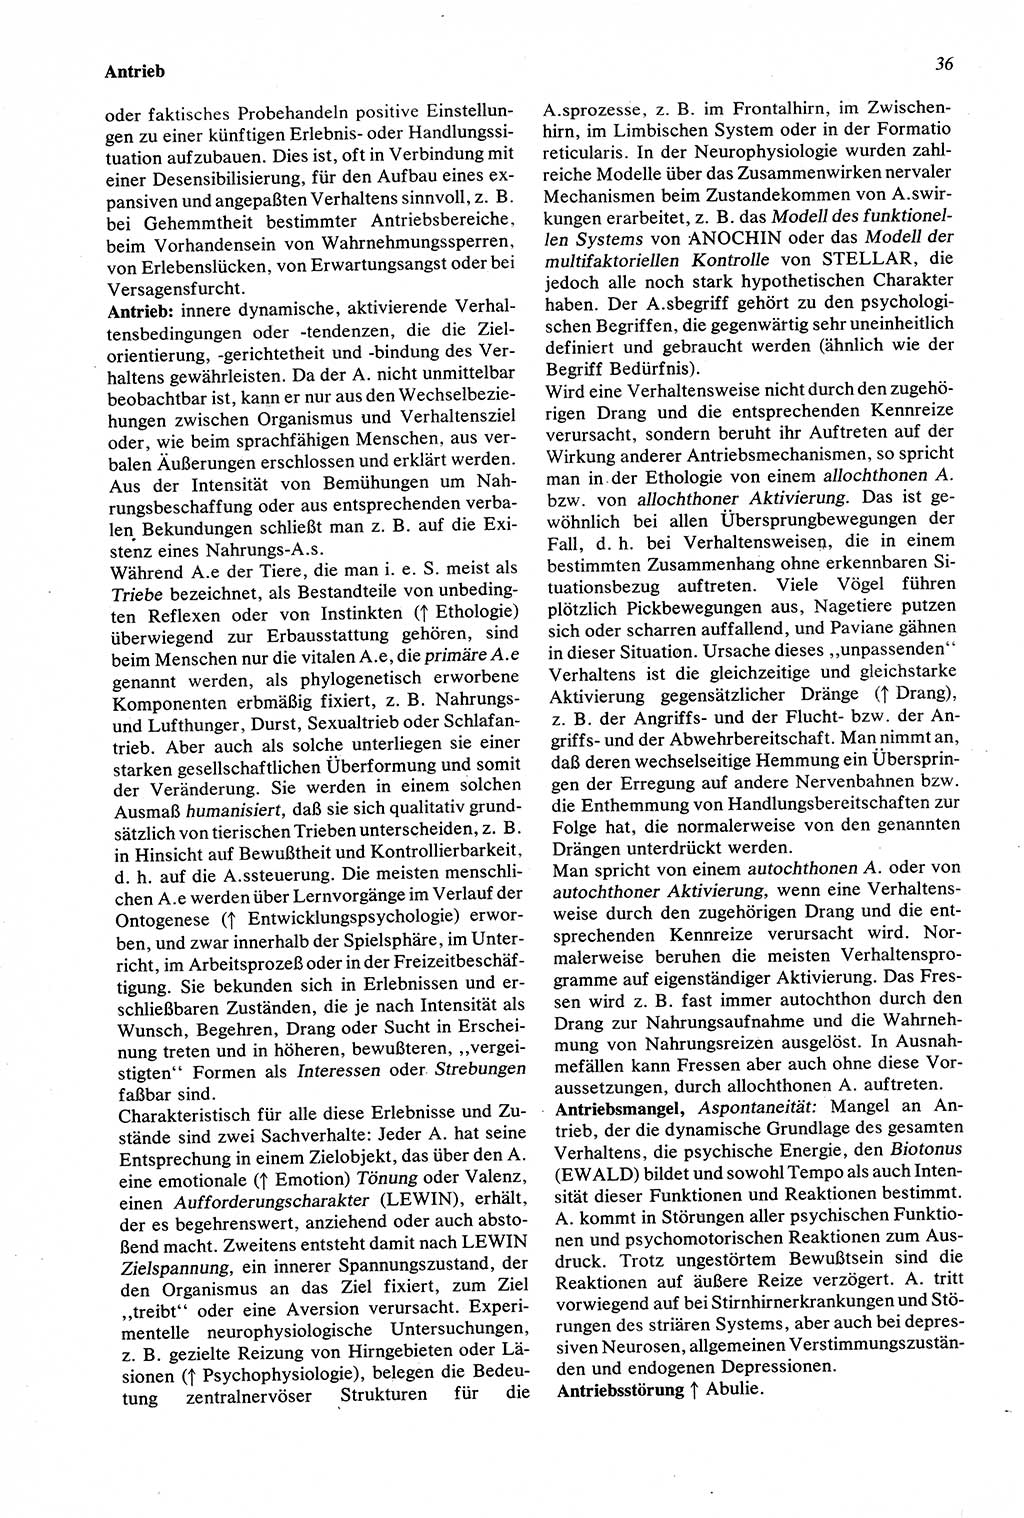 Wörterbuch der Psychologie [Deutsche Demokratische Republik (DDR)] 1976, Seite 36 (Wb. Psych. DDR 1976, S. 36)